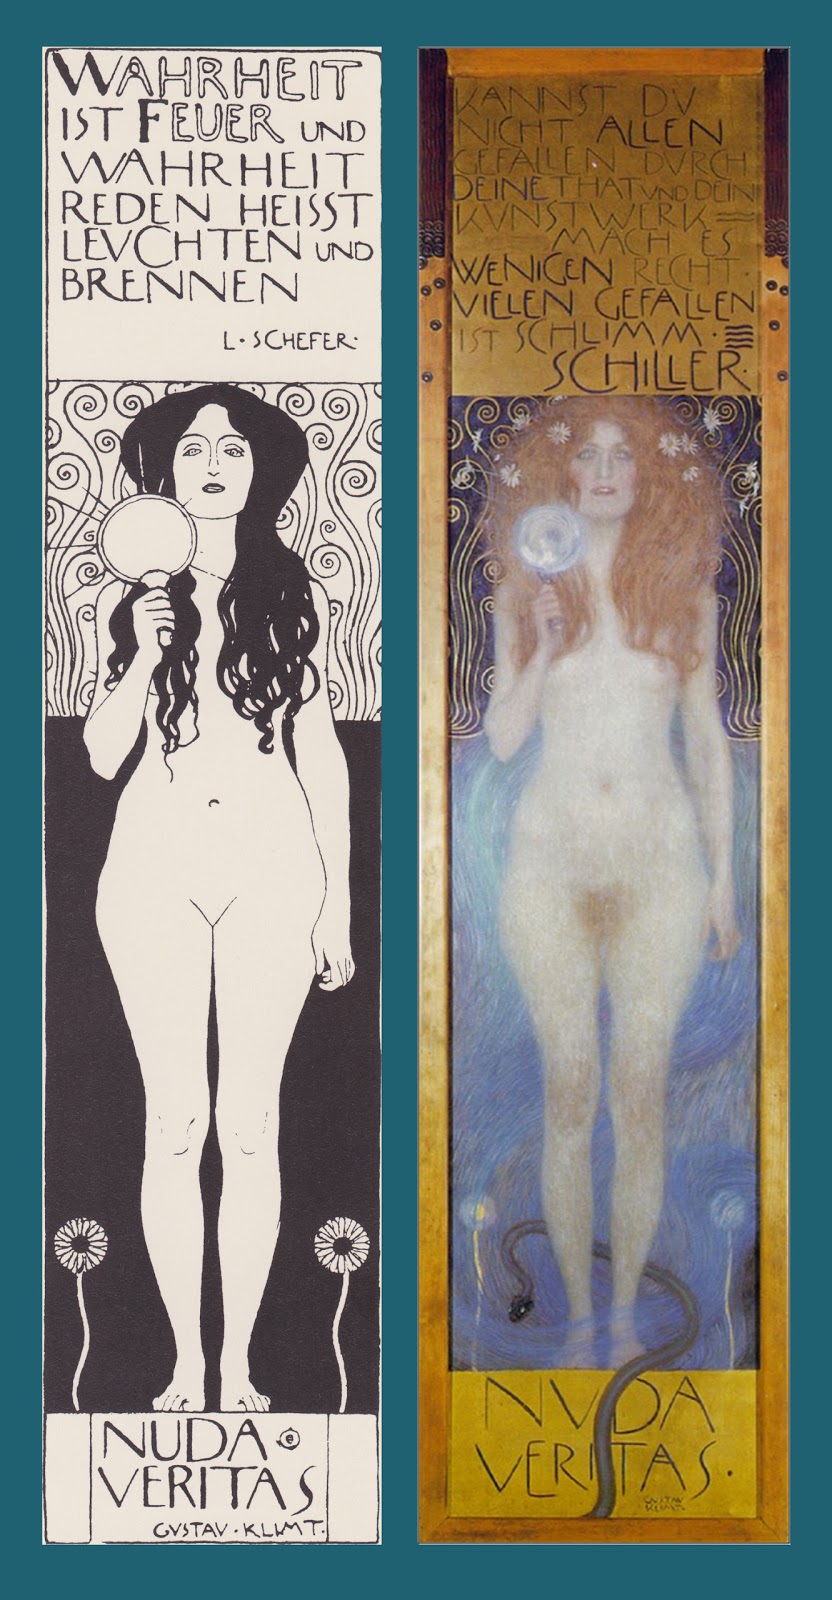 Nuda Veritas, Gustav Klimt, 1899, Osterreichisches Theatermuseum de Vienne